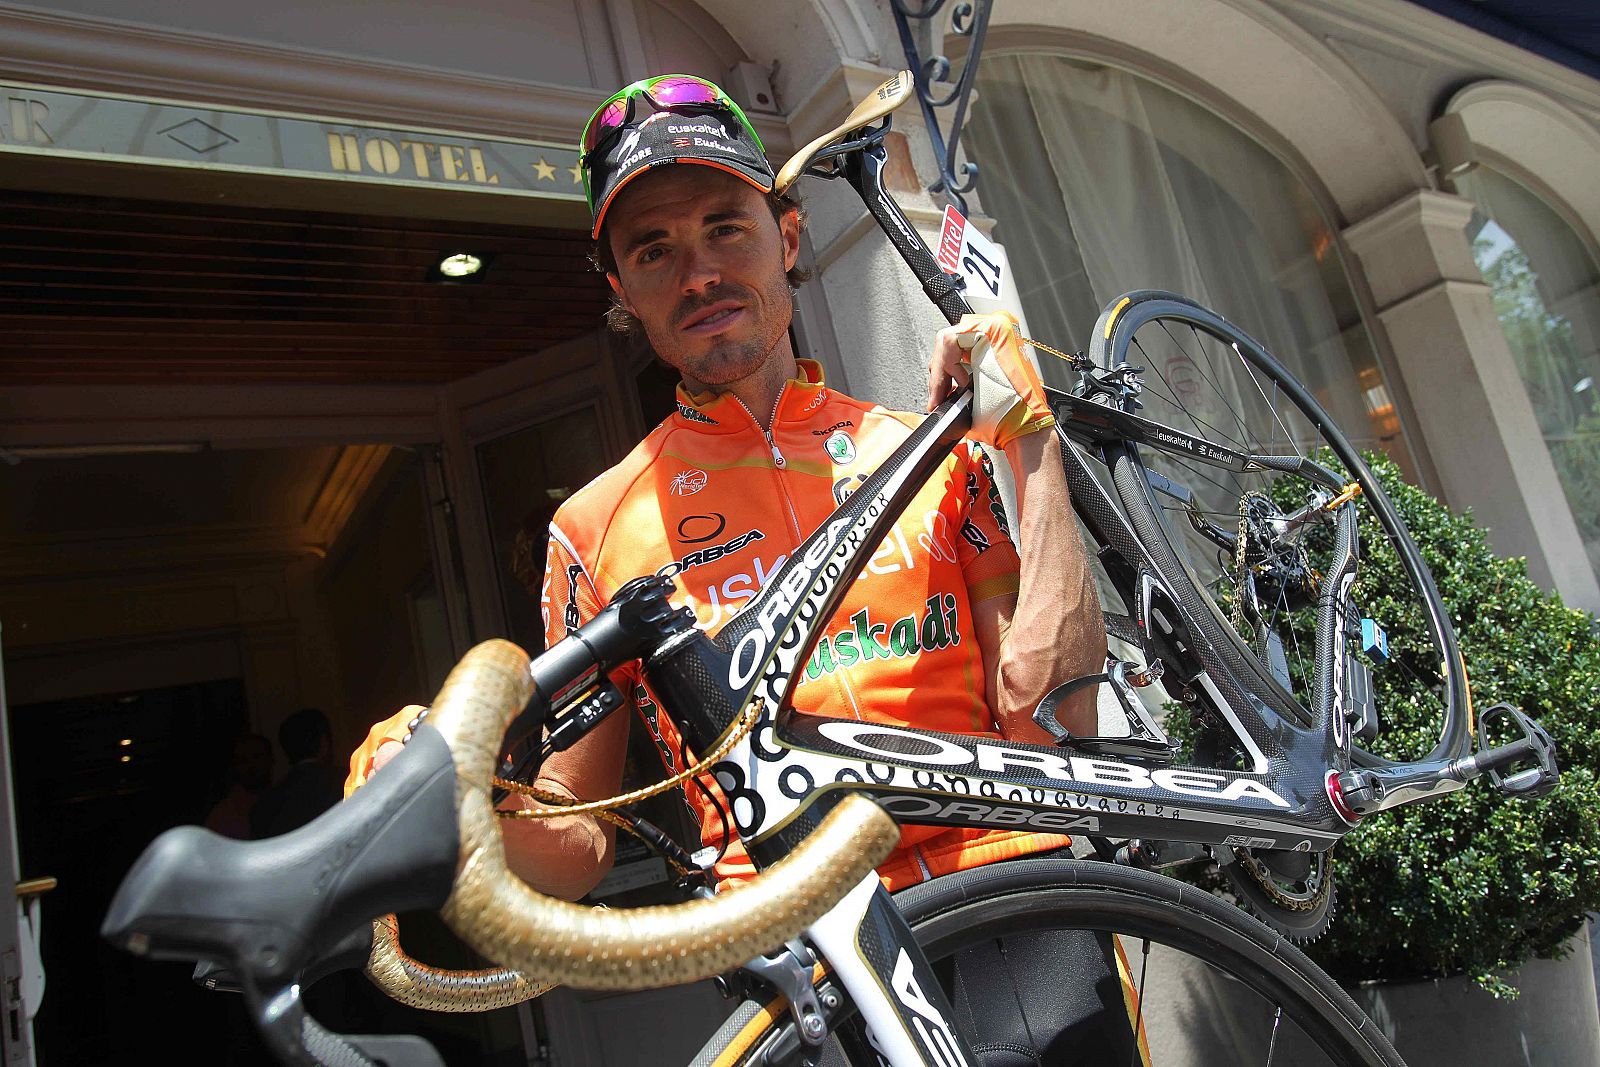 El ciclista español Samuel Sánchez posa con su bicicleta tras entrenar con sus compañeros de equipo del Euskaltel Euskadi en la primera jornada de descanso del Tour.